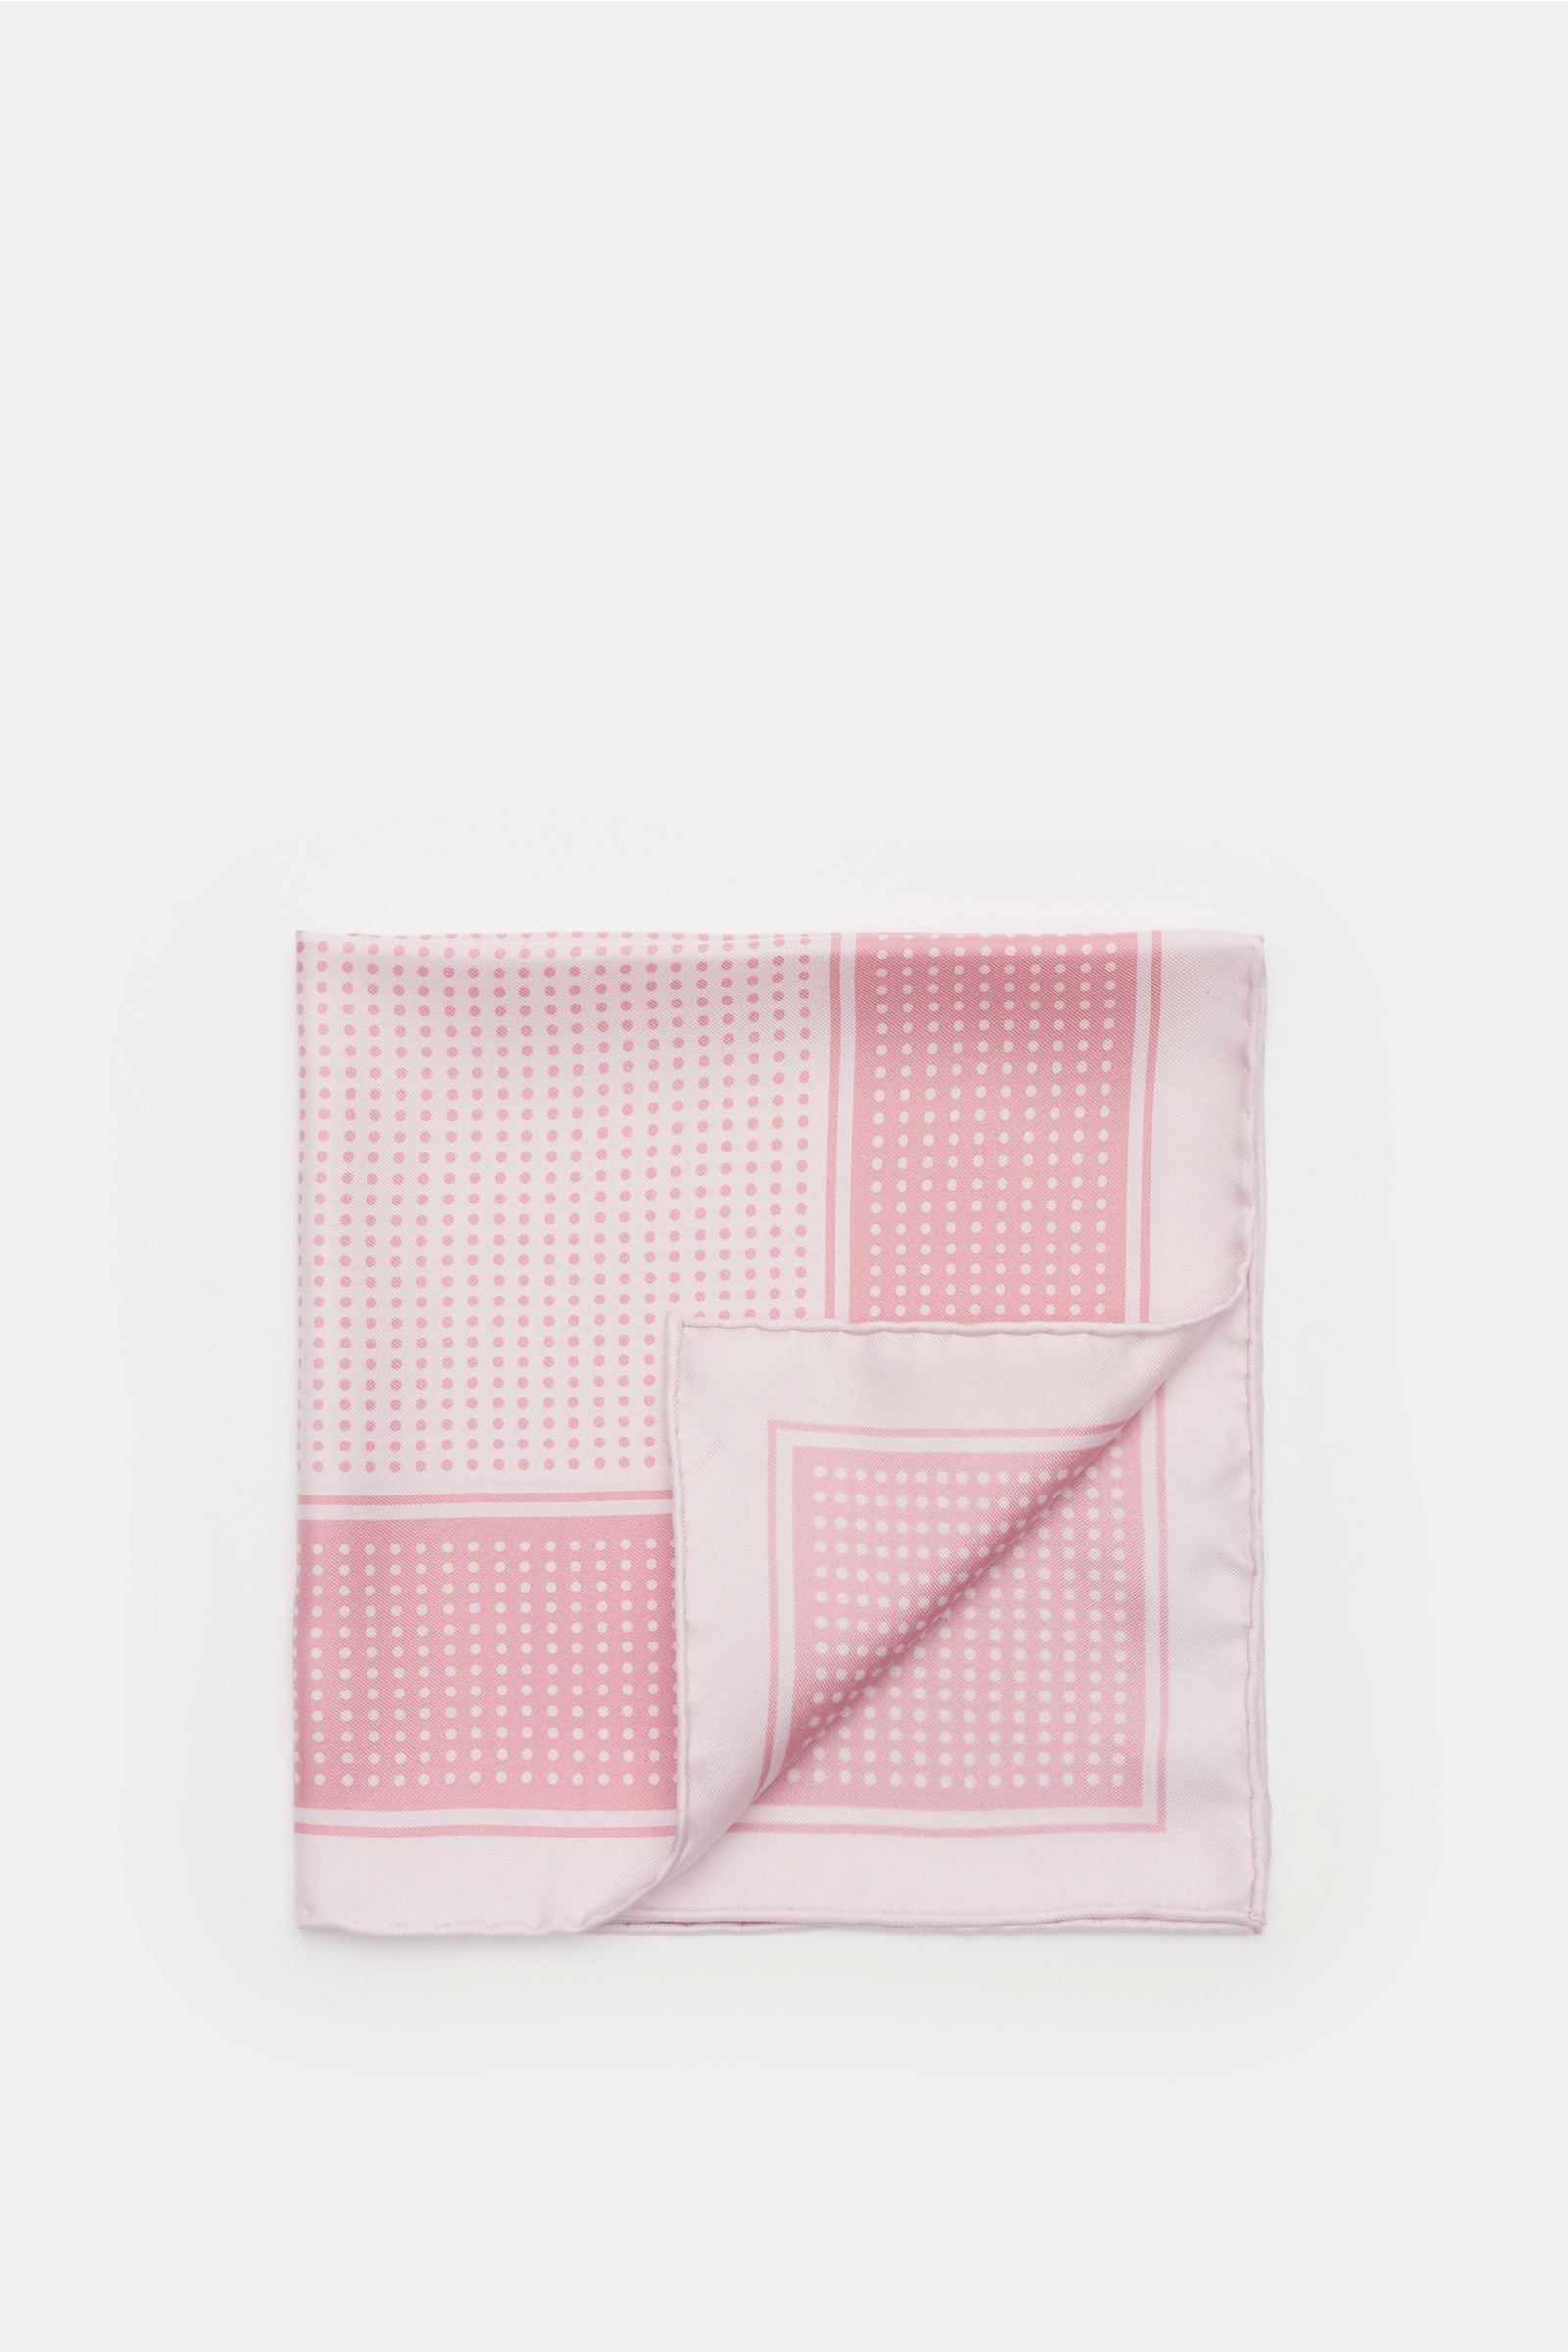 Pocket square antique pink/rose dotted